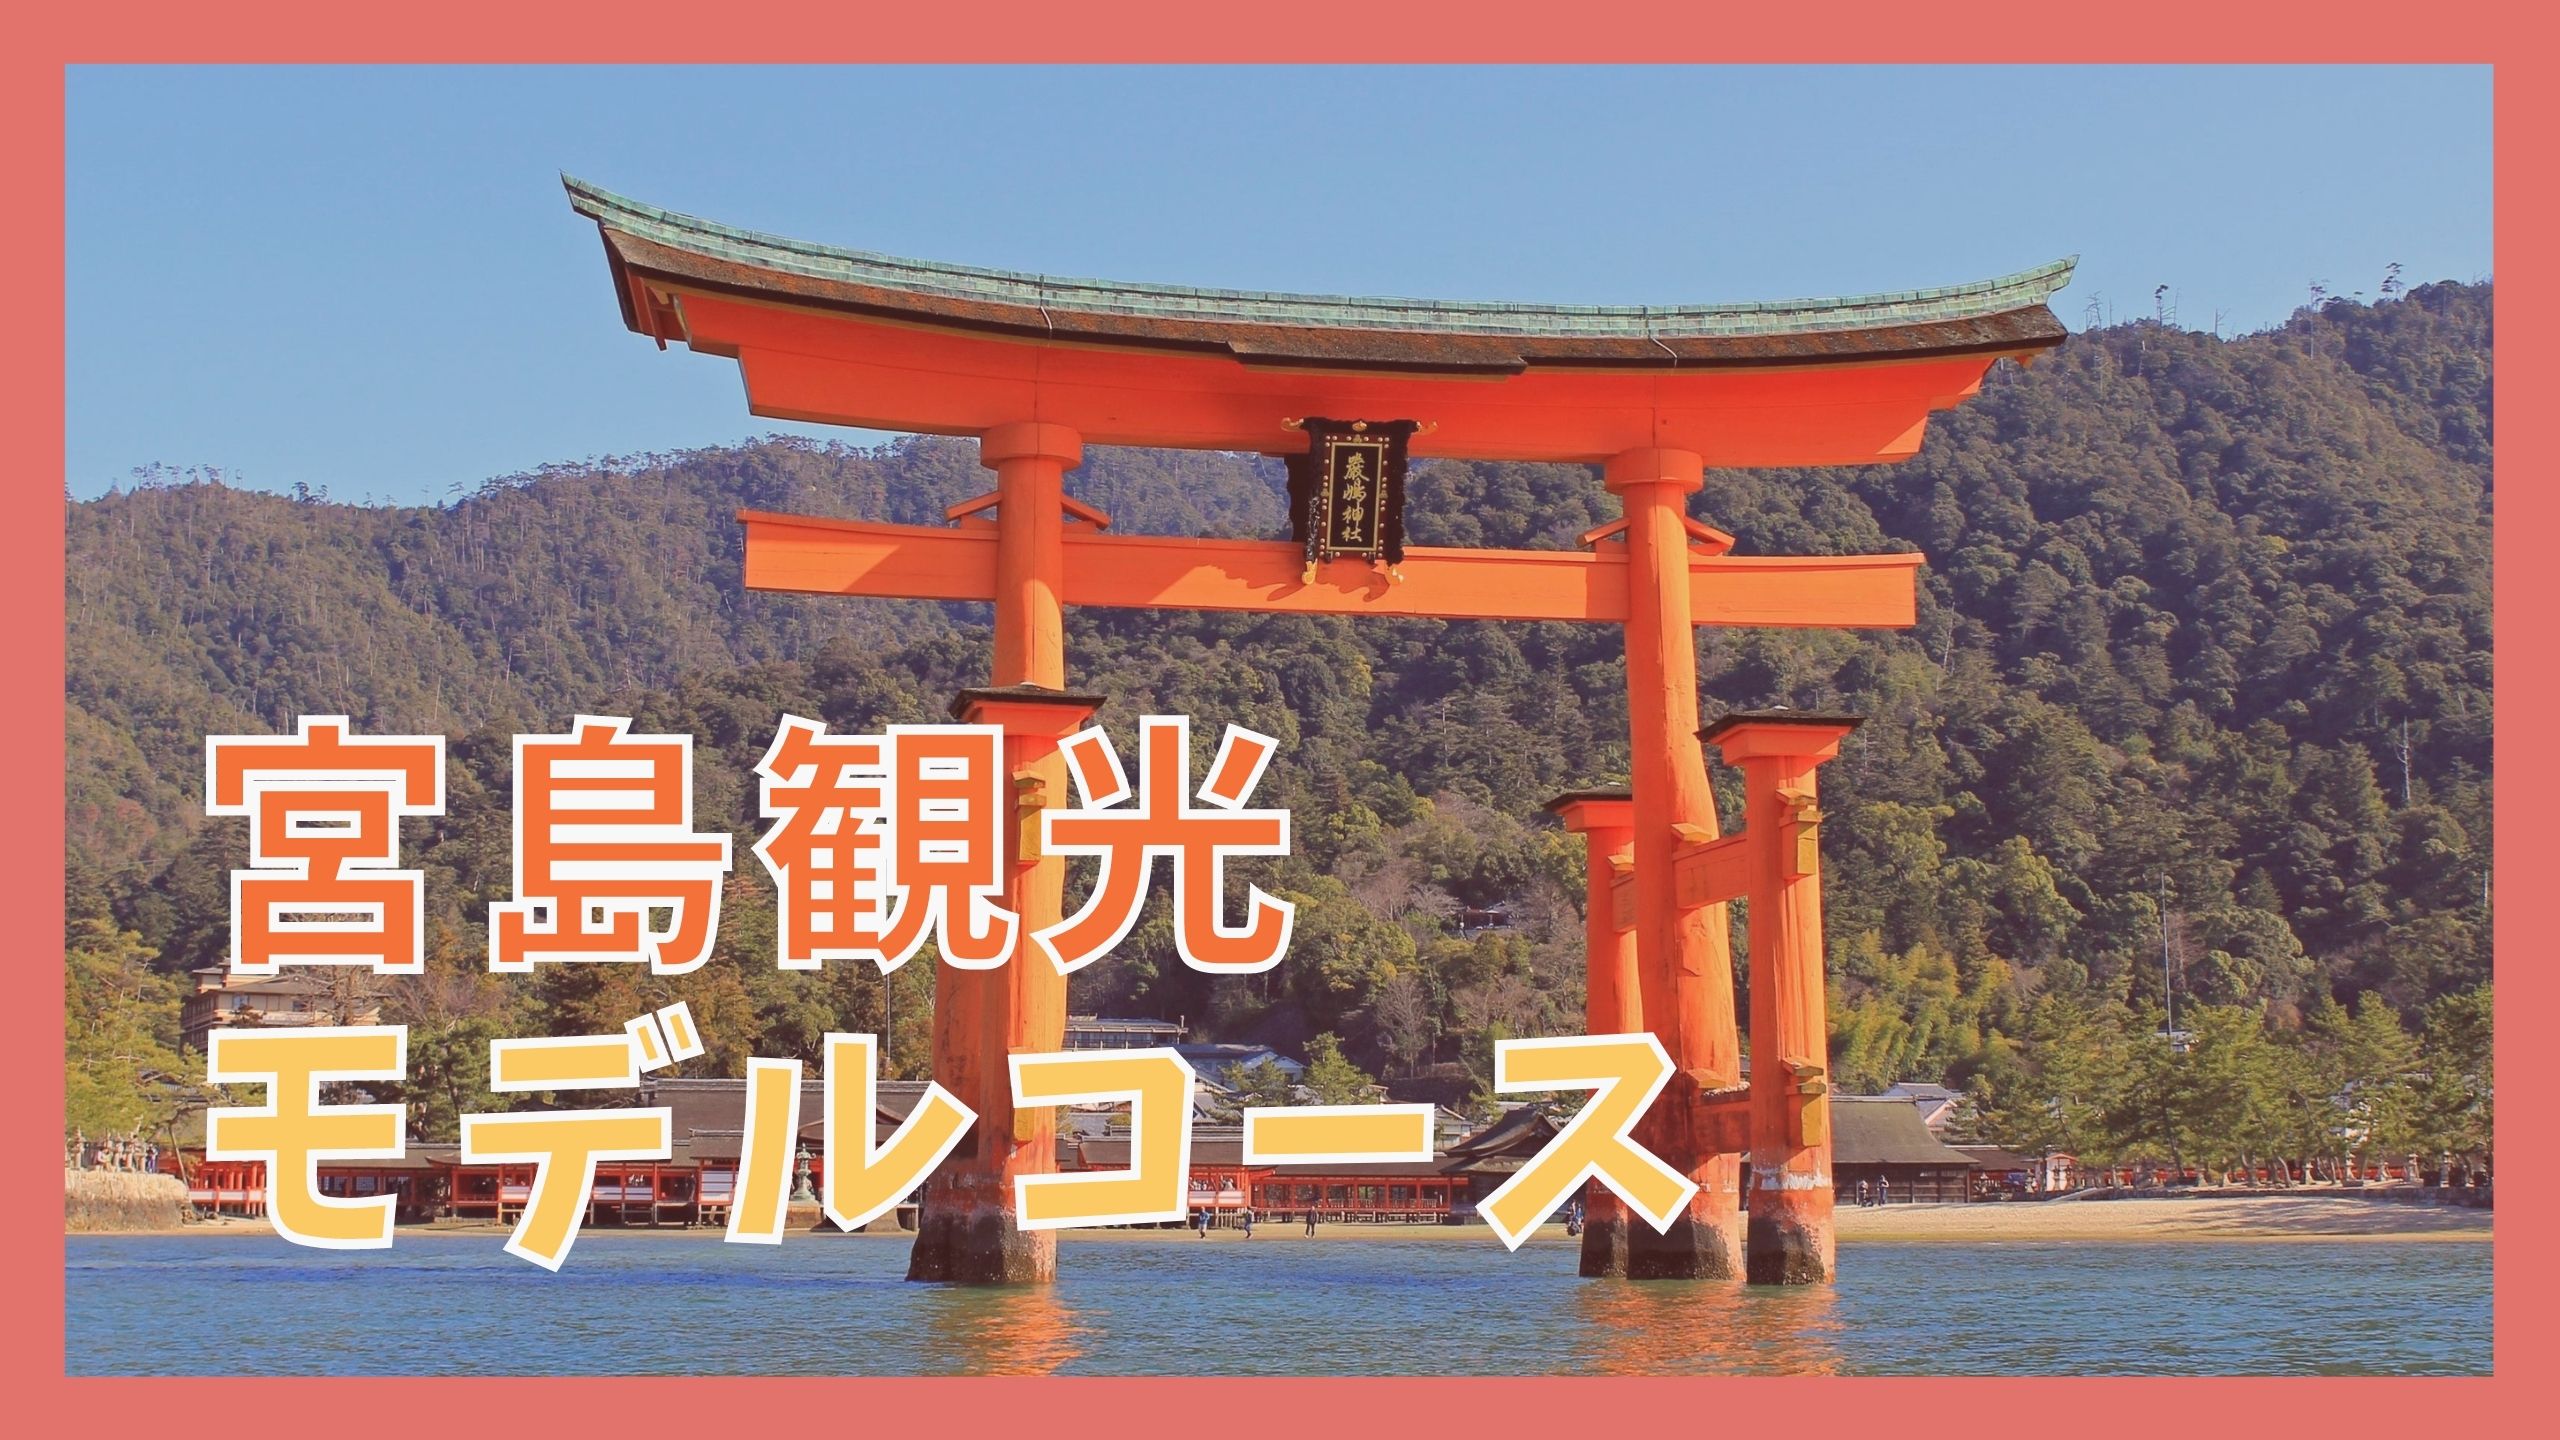 宮島観光モデルコース 日帰りで巡る厳島神社と8つの観光名所 ジャパンワンダラー